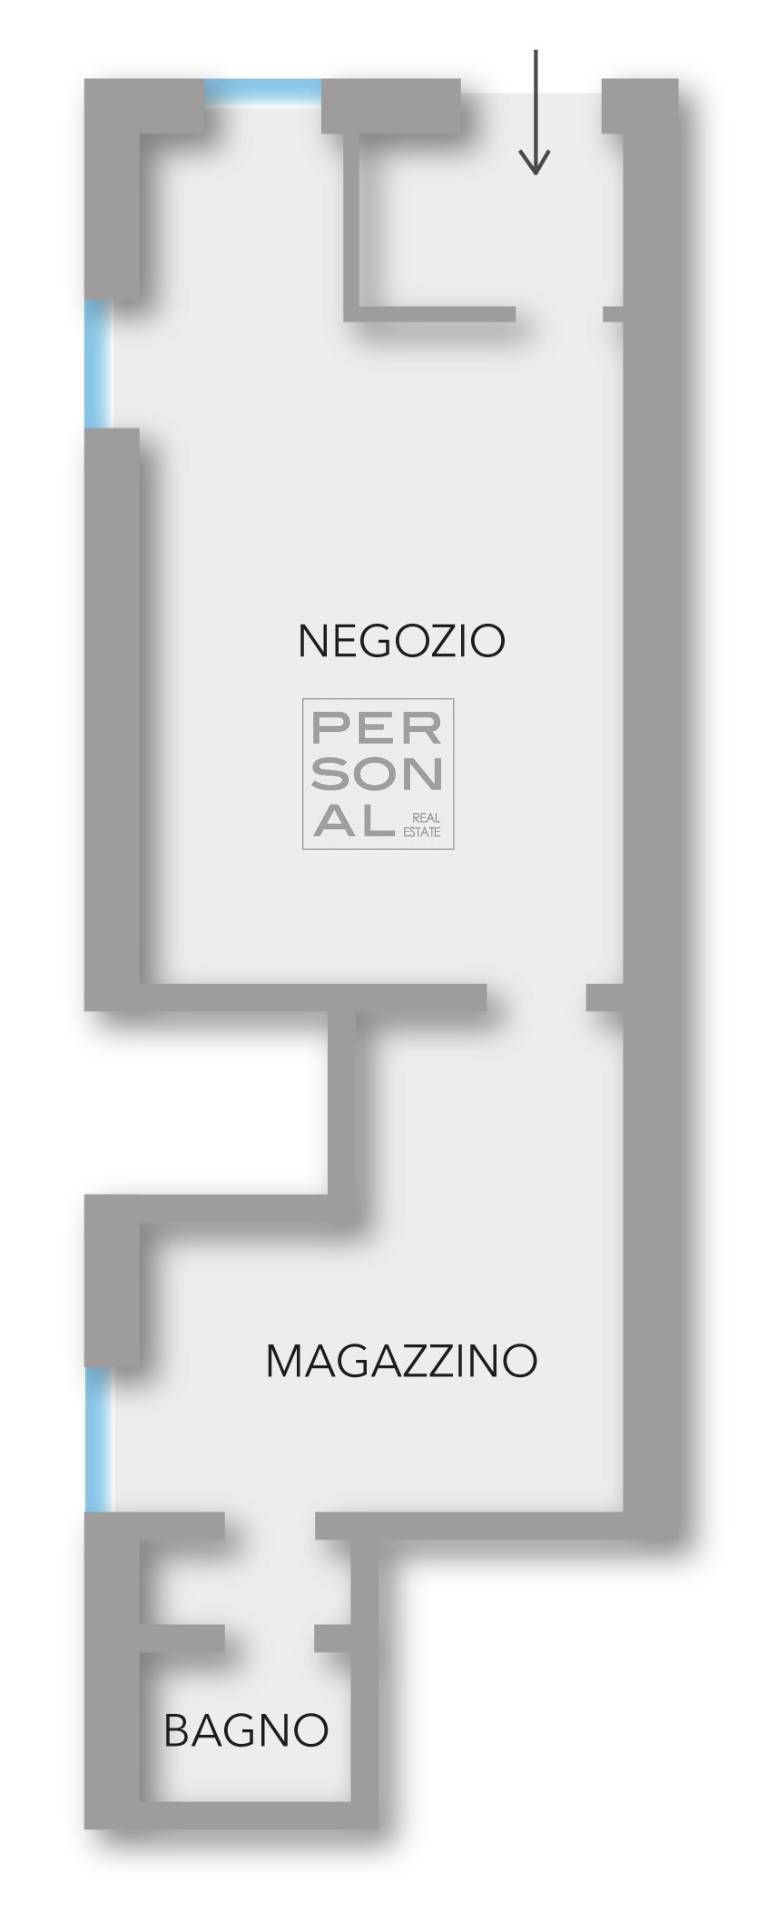 Negozio in affitto, Trento centro storico